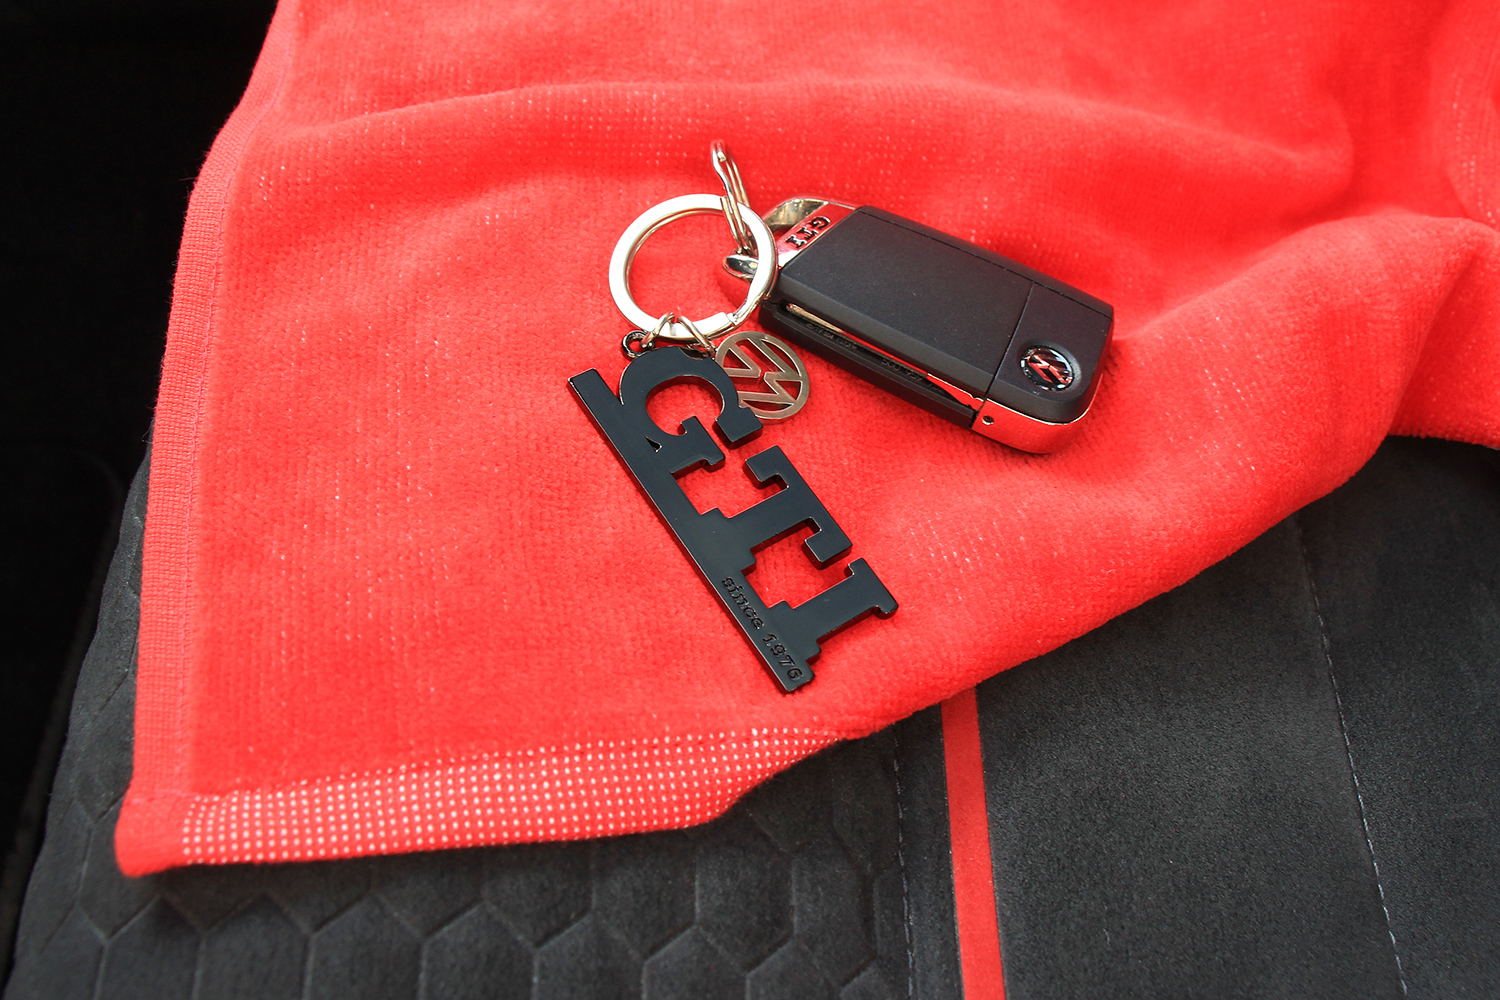 GTI Schlüsselanhänger mit Charm in Sichtverpackung - since 1976, Farbe:  schwarz